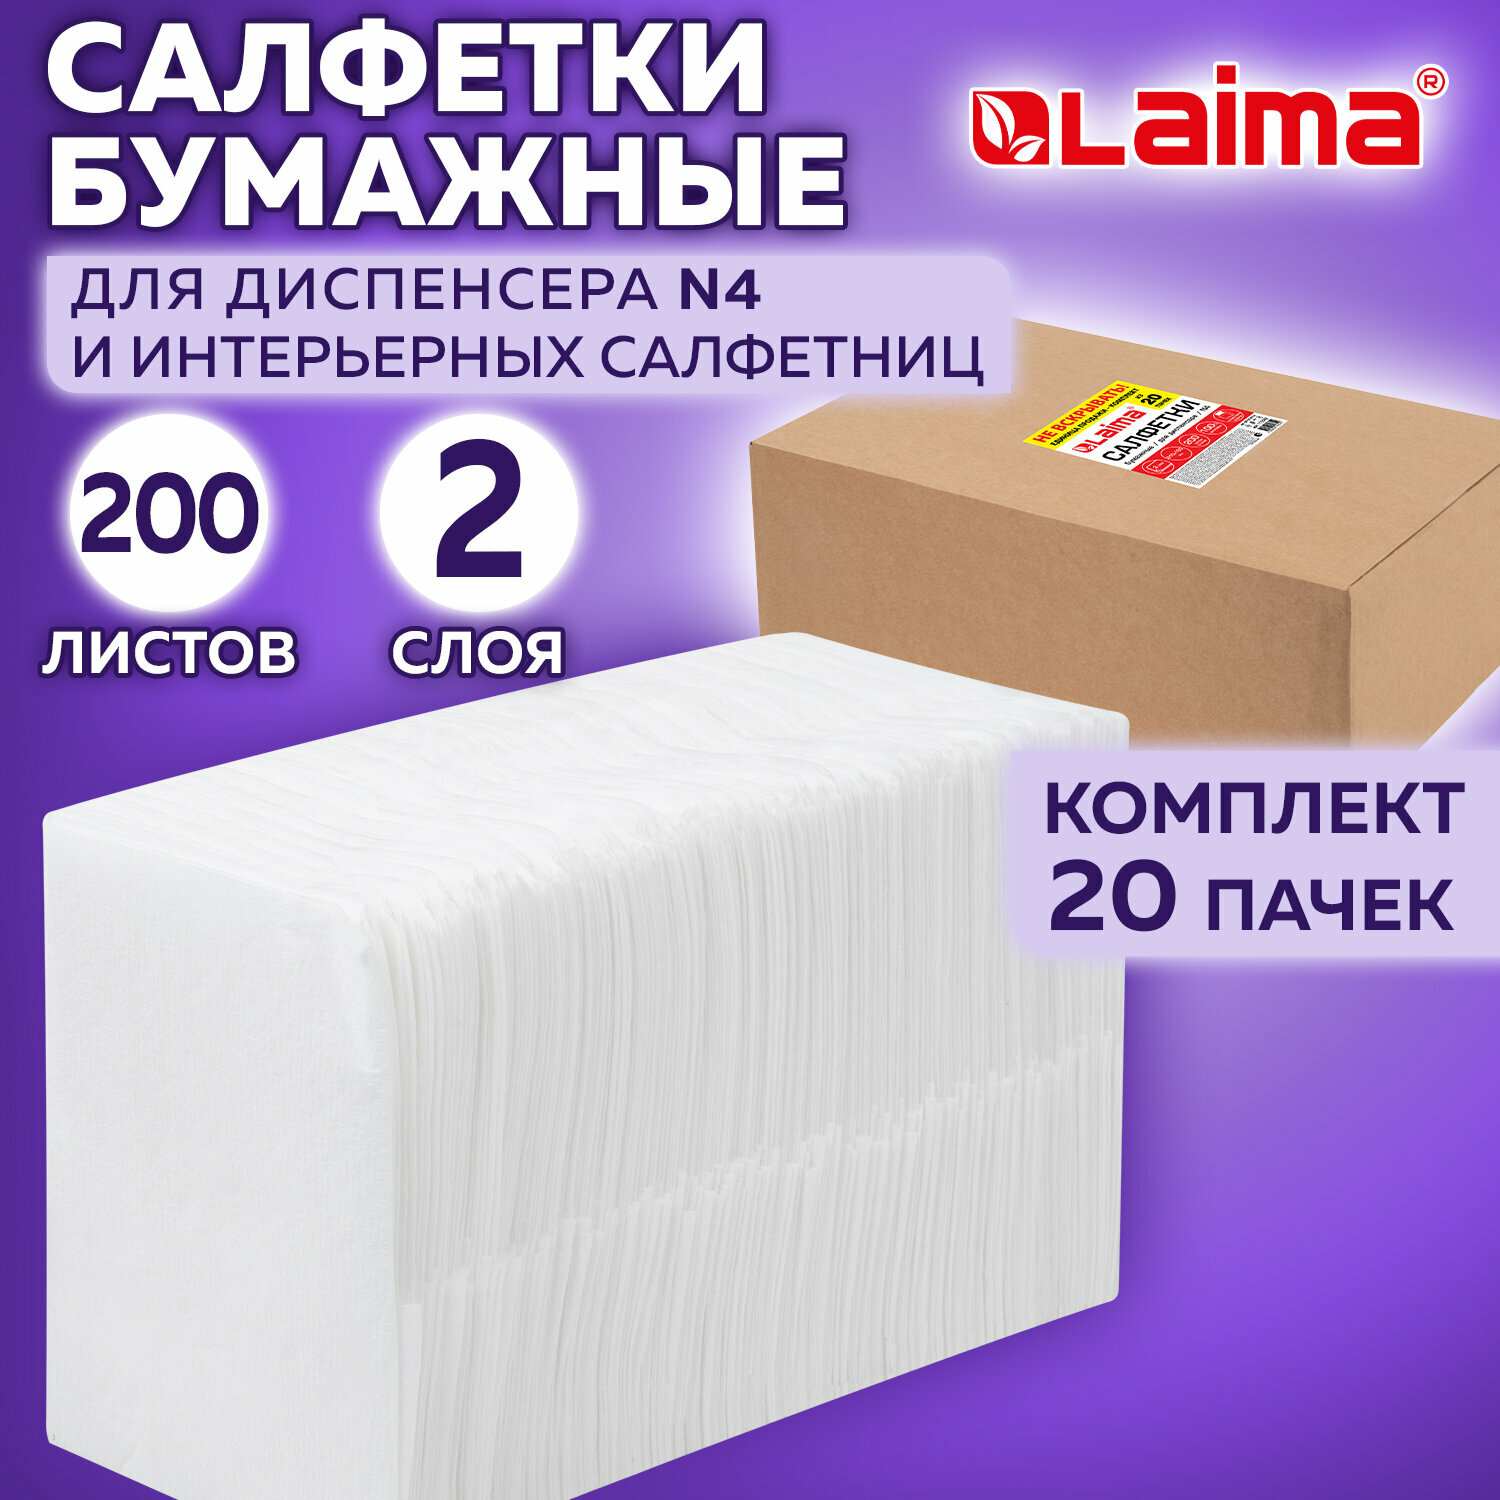 Салфетки бумажные для диспенсера N4 на стол сервировочные прямоугольные набор 20 пачек по 200 шт, 21х16,5 см, белые двухслойные, Laima Premium, 115502